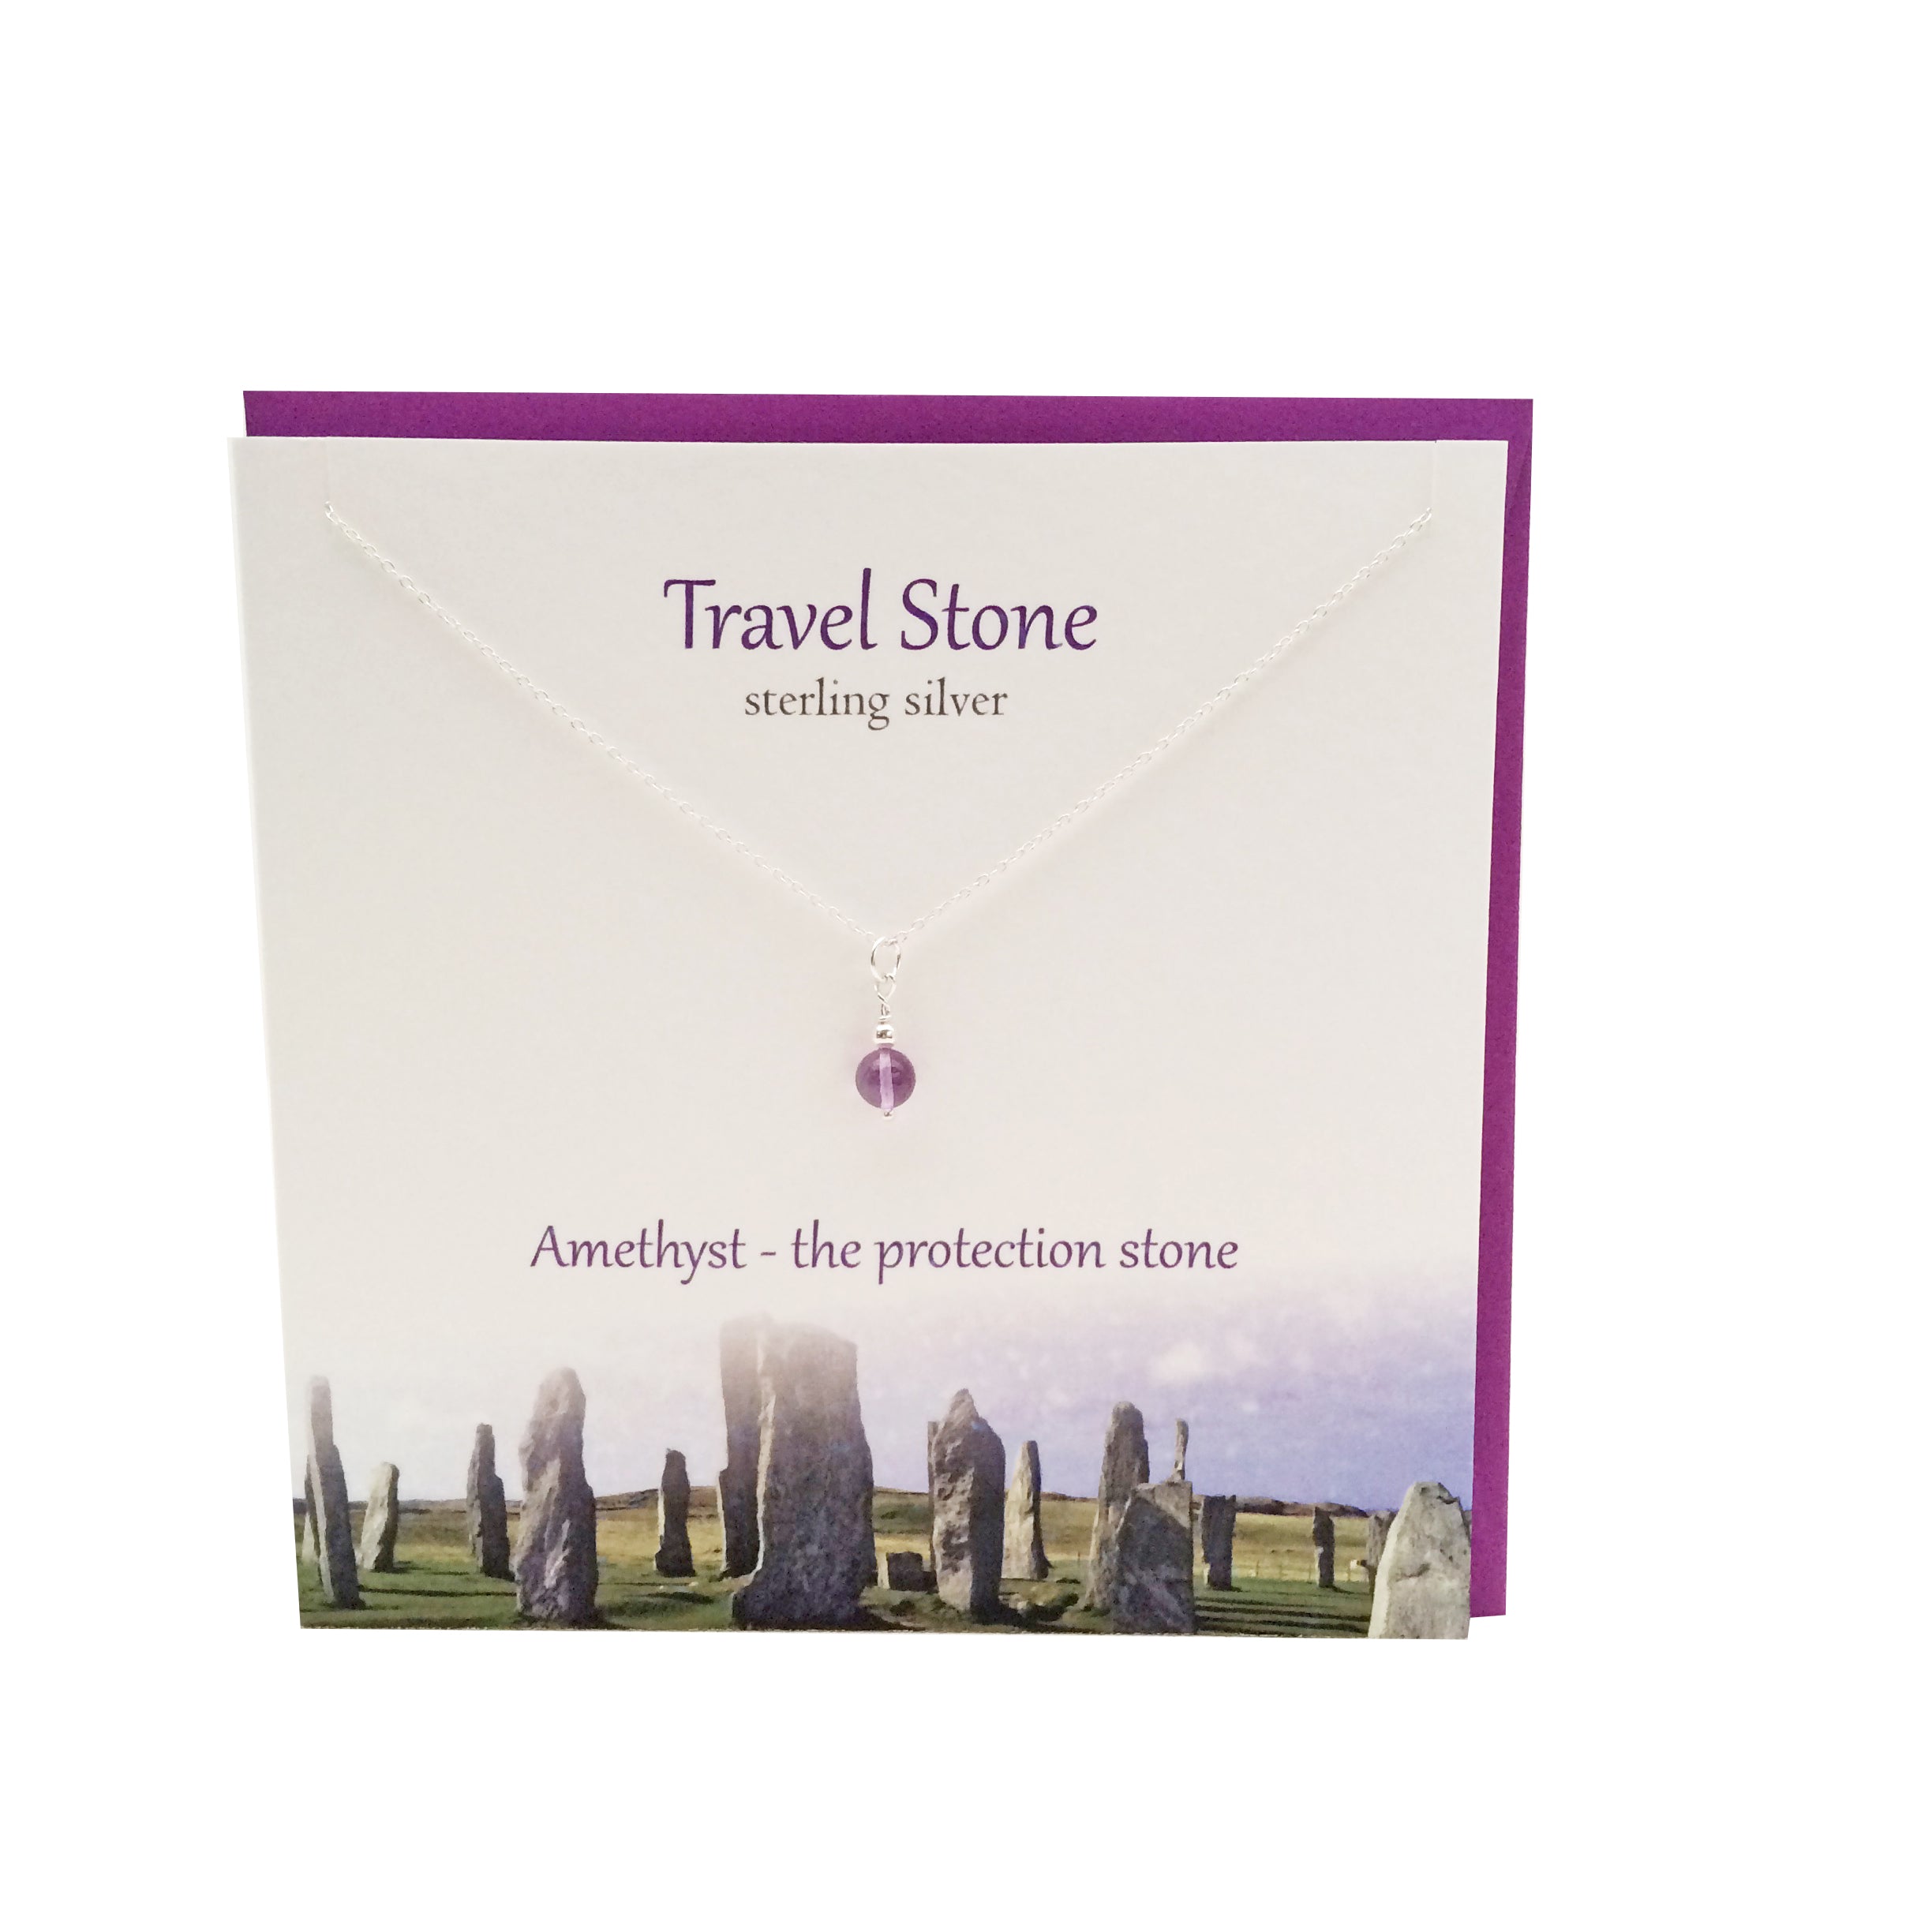 Travel Stone silver amethyst pendant | The Silver Studio Scotland